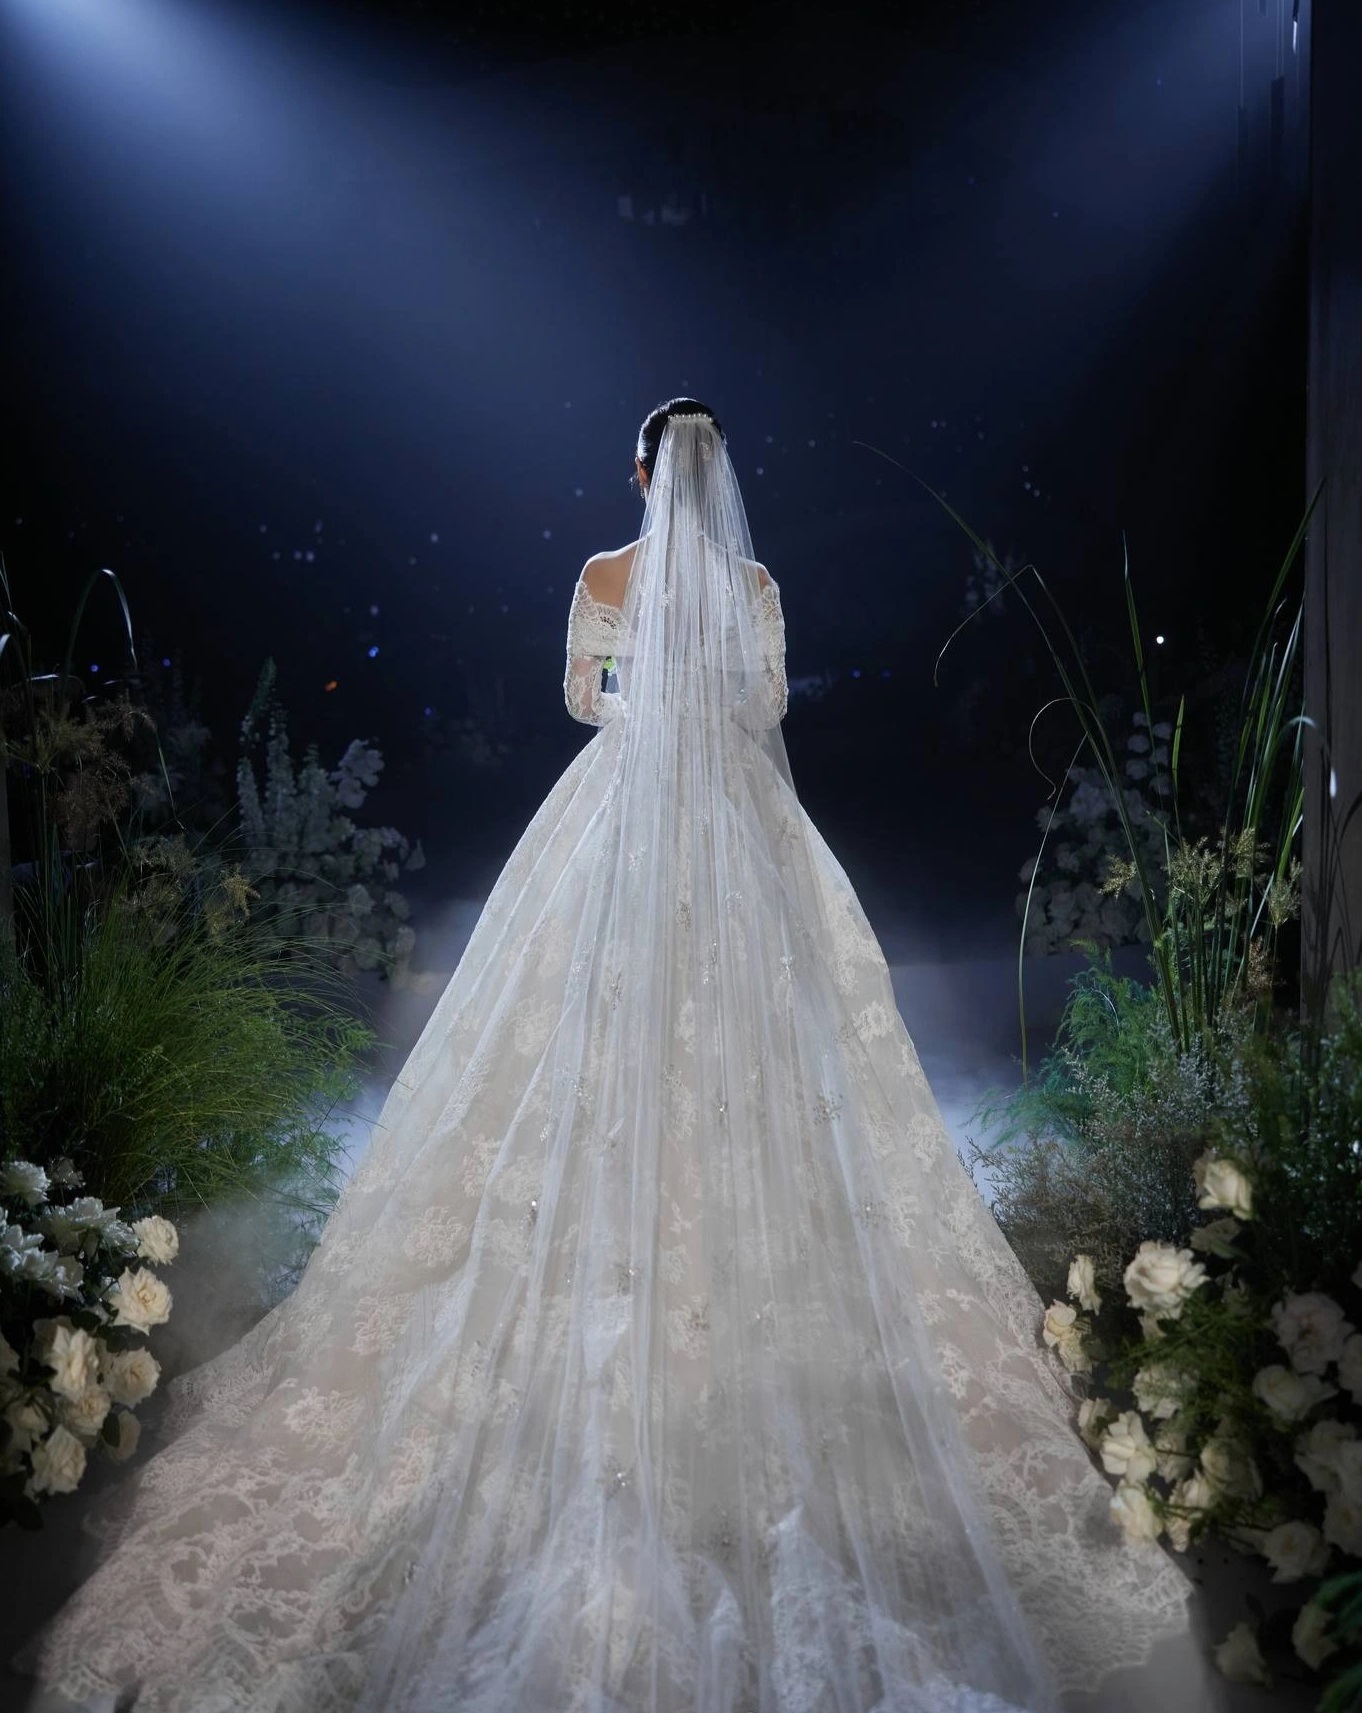 View - Midu diện 4 chiếc váy độc đáo, trị giá hàng tỷ đồng trong đám cưới | Báo Dân trí